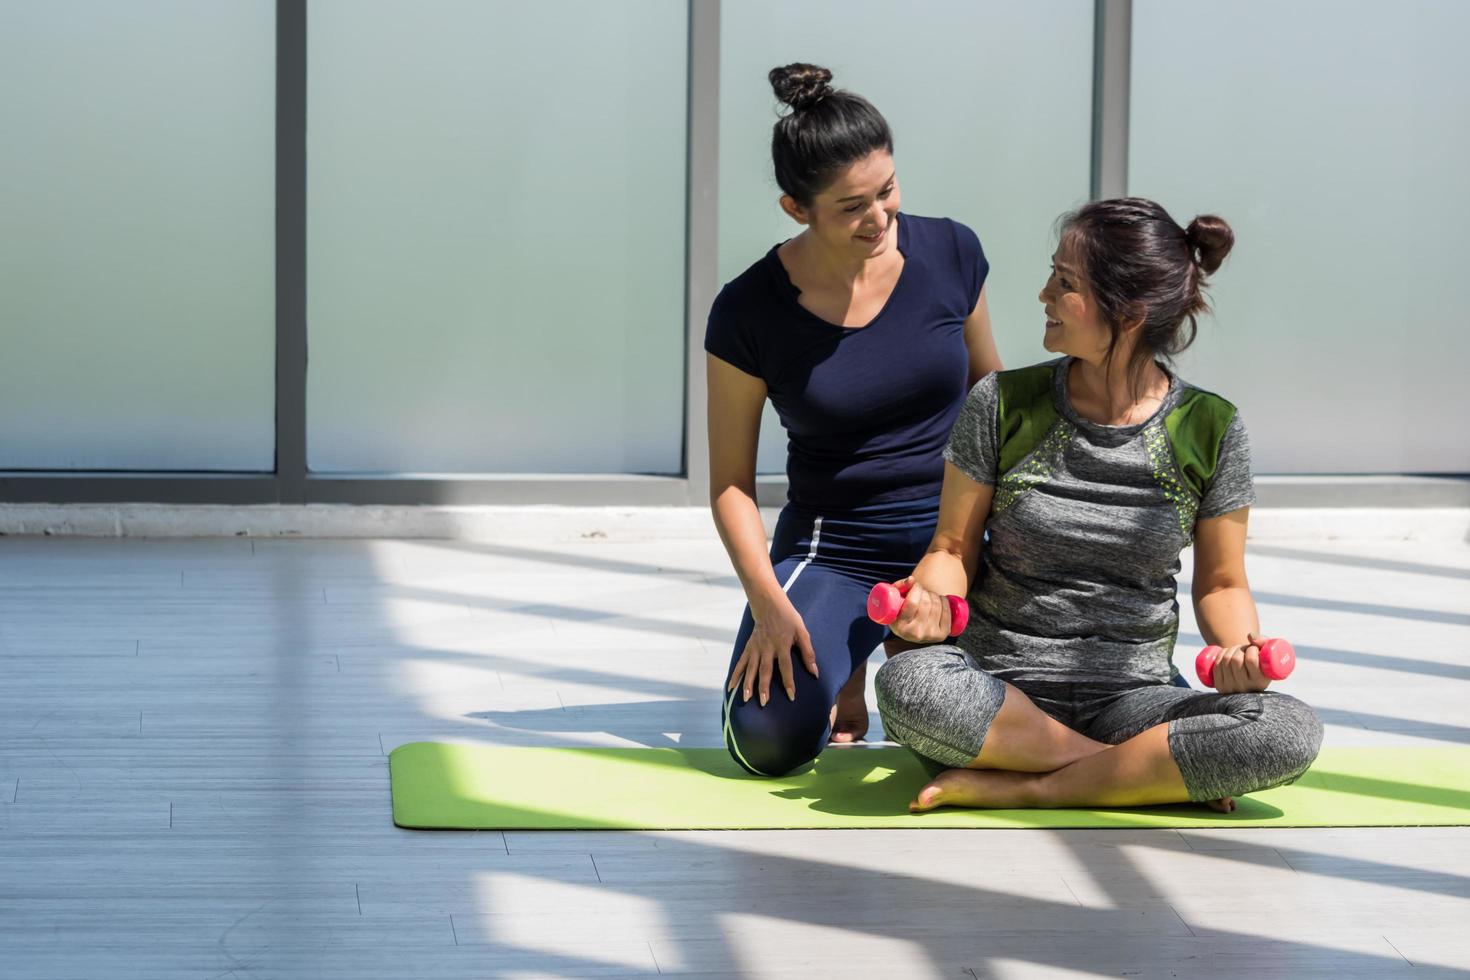 duas mulheres asiáticas fazendo ioga juntas em uma academia. foto